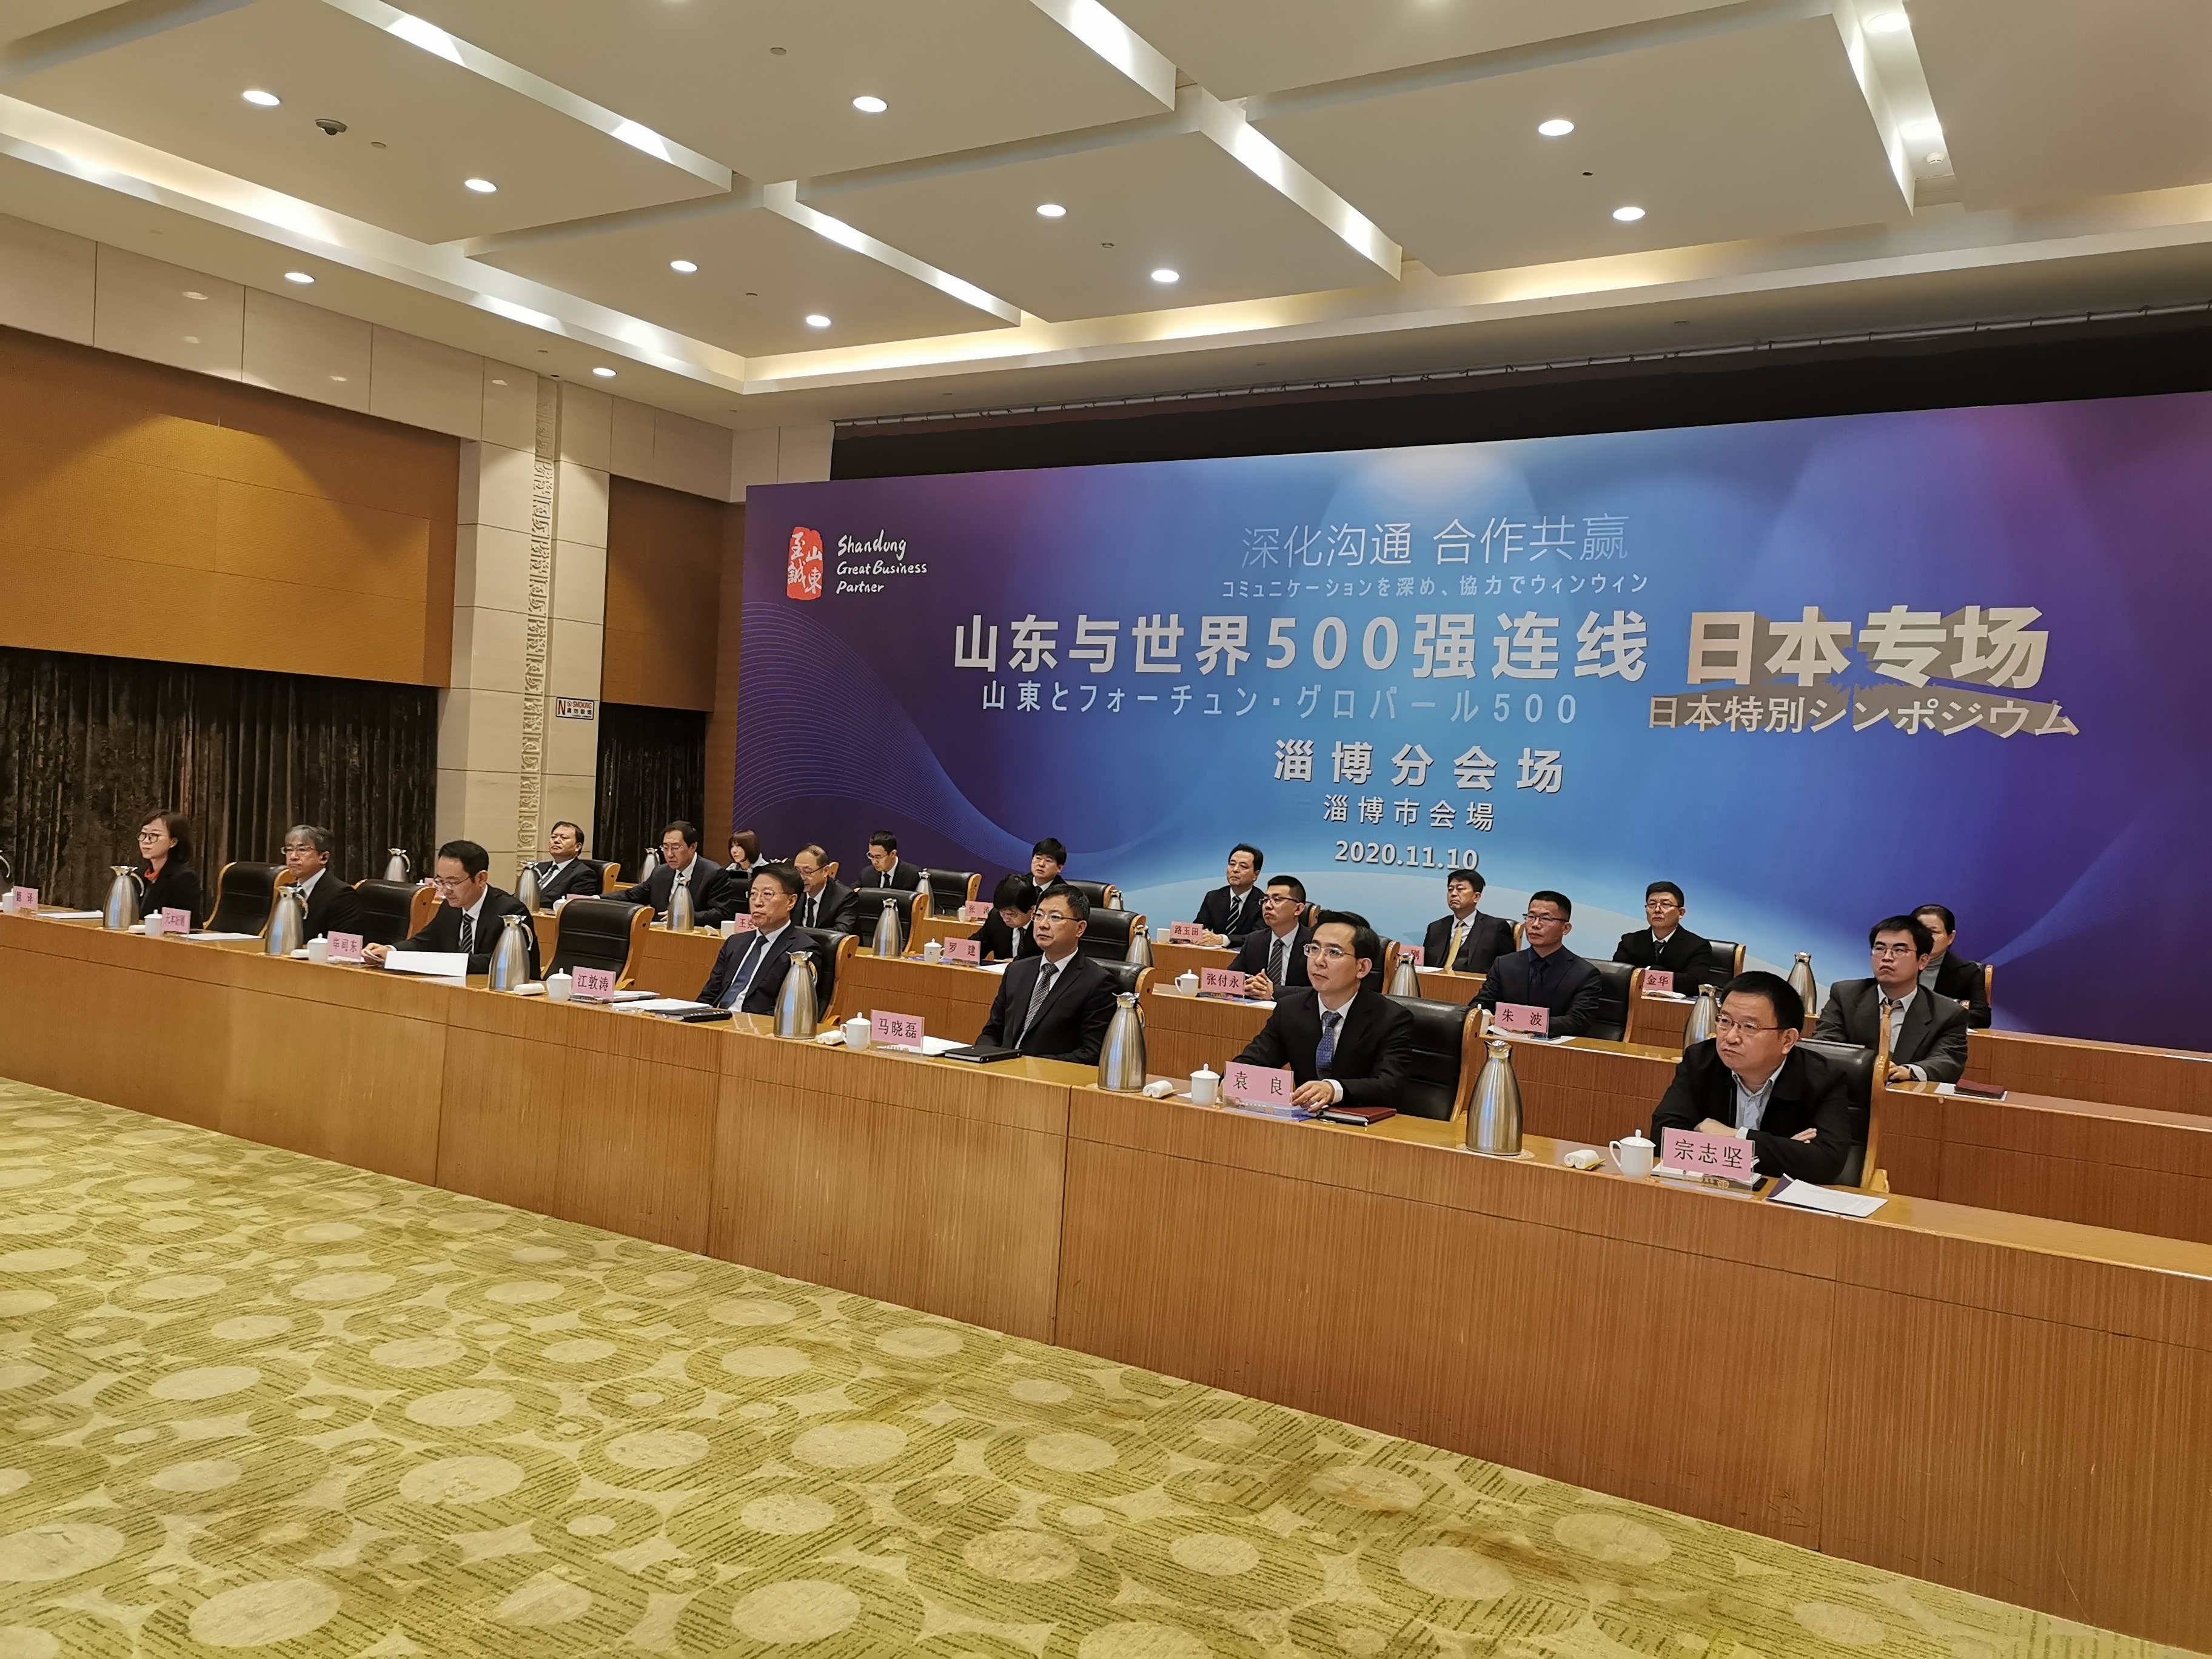 快讯 | 淄博市在“山东与世界500强连线”活动中达成项目签约